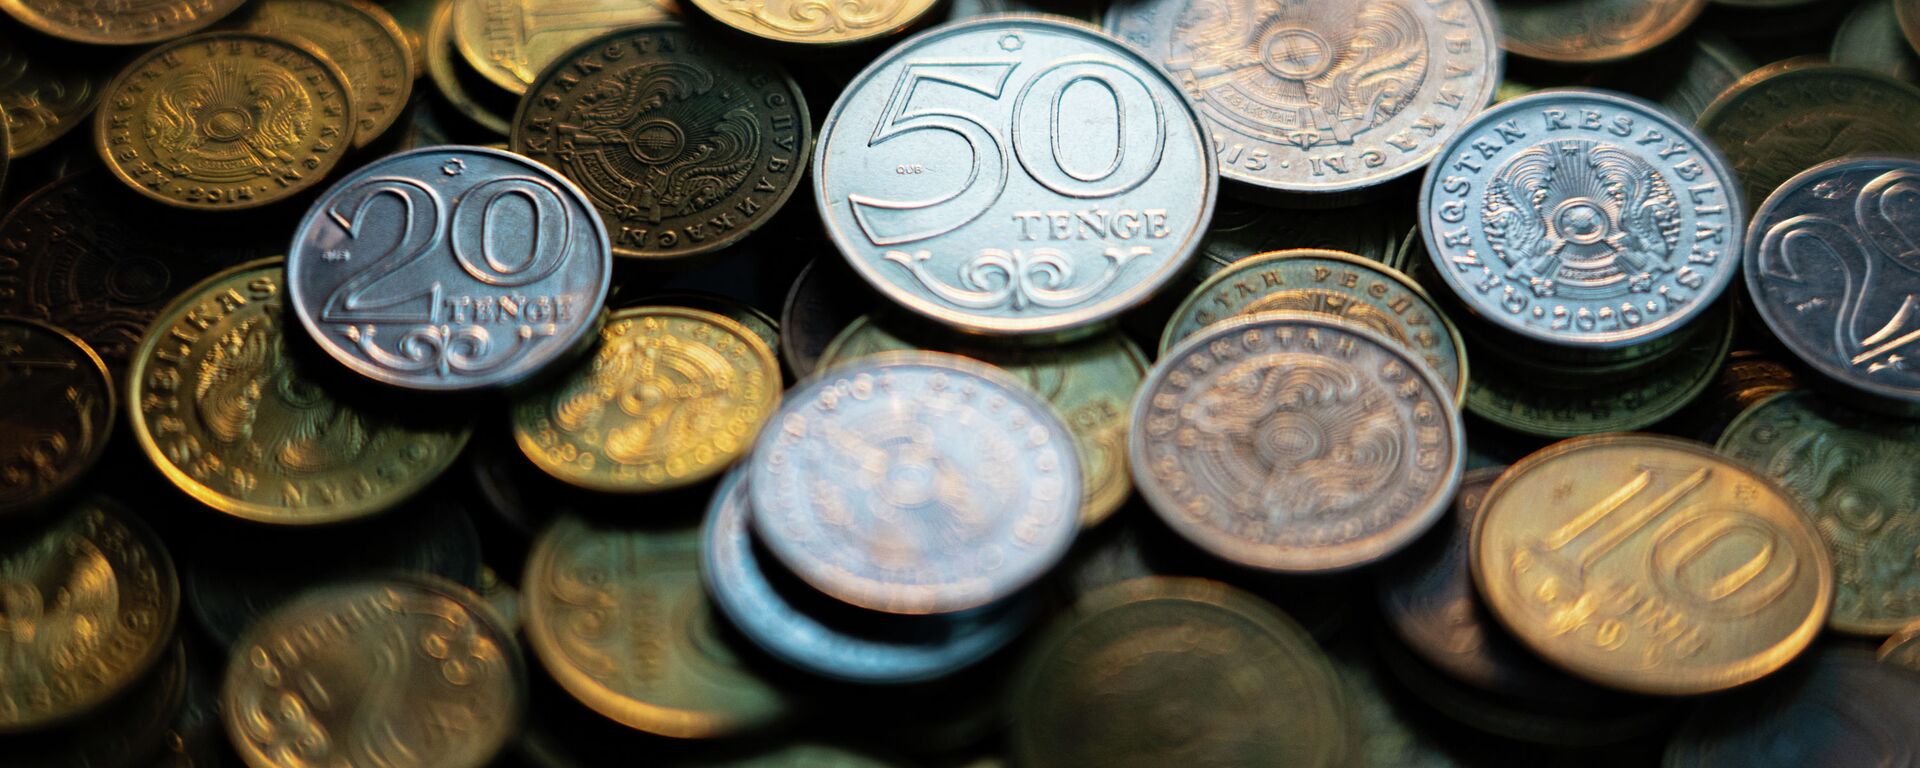 Деньги тенге монеты - Sputnik Казахстан, 1920, 17.03.2021